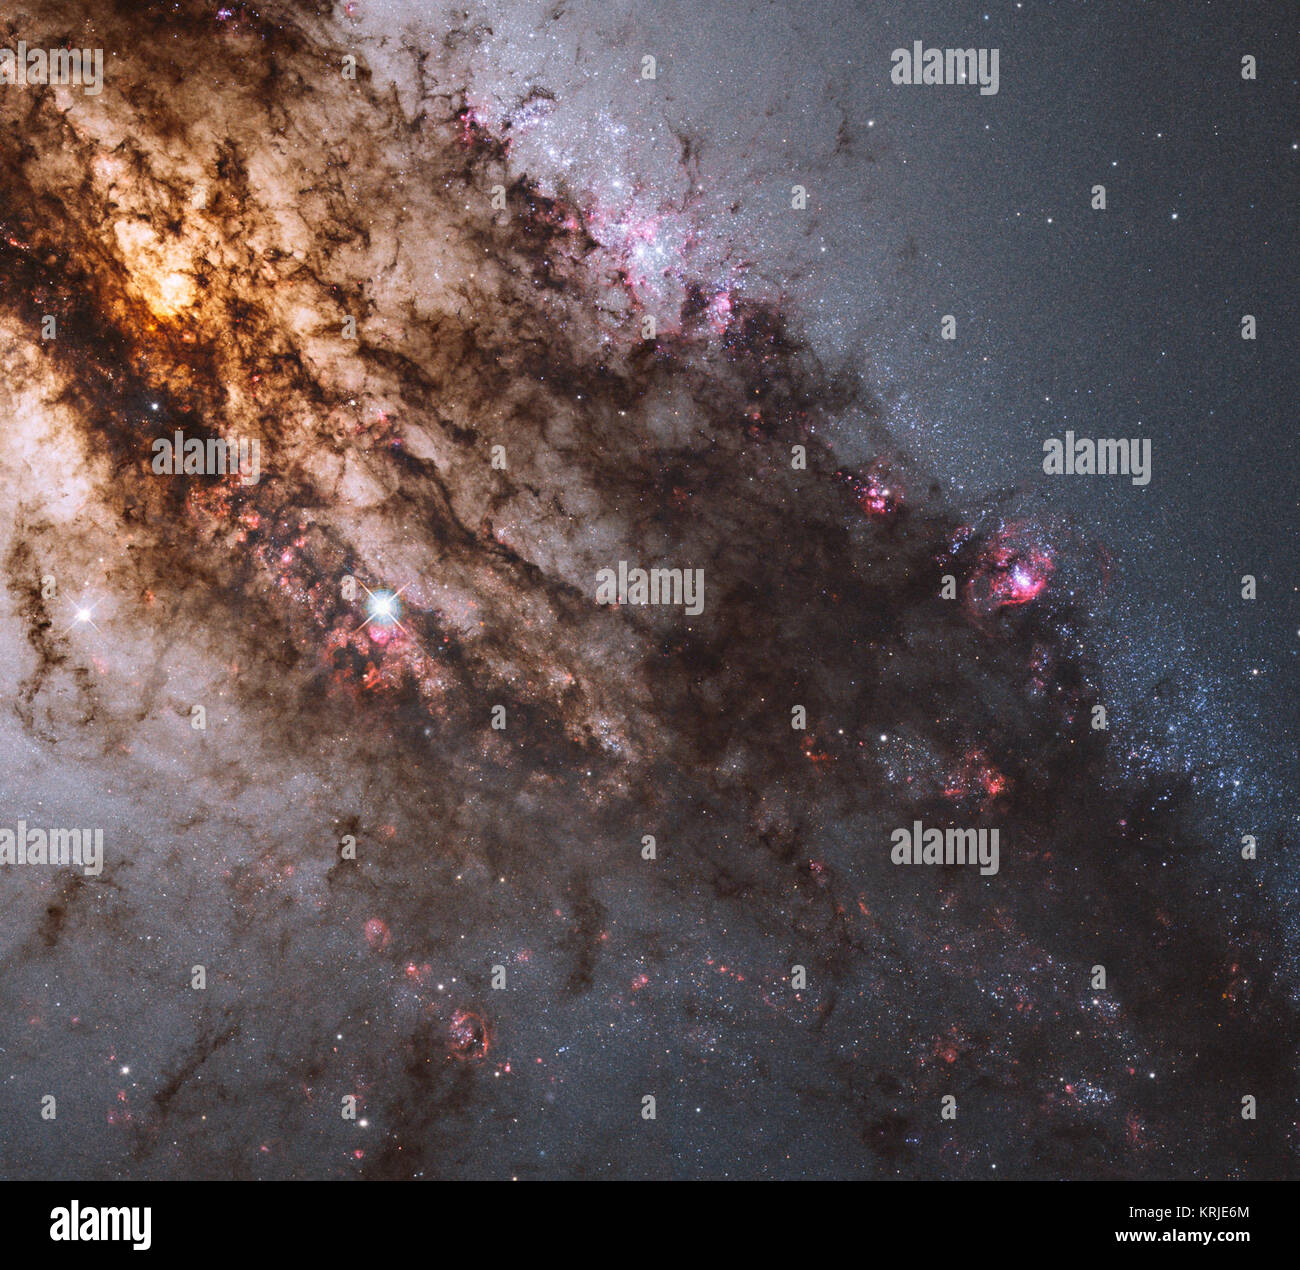 Feuersturm der Star Geburt in Galaxie Centaurus A Stockfoto